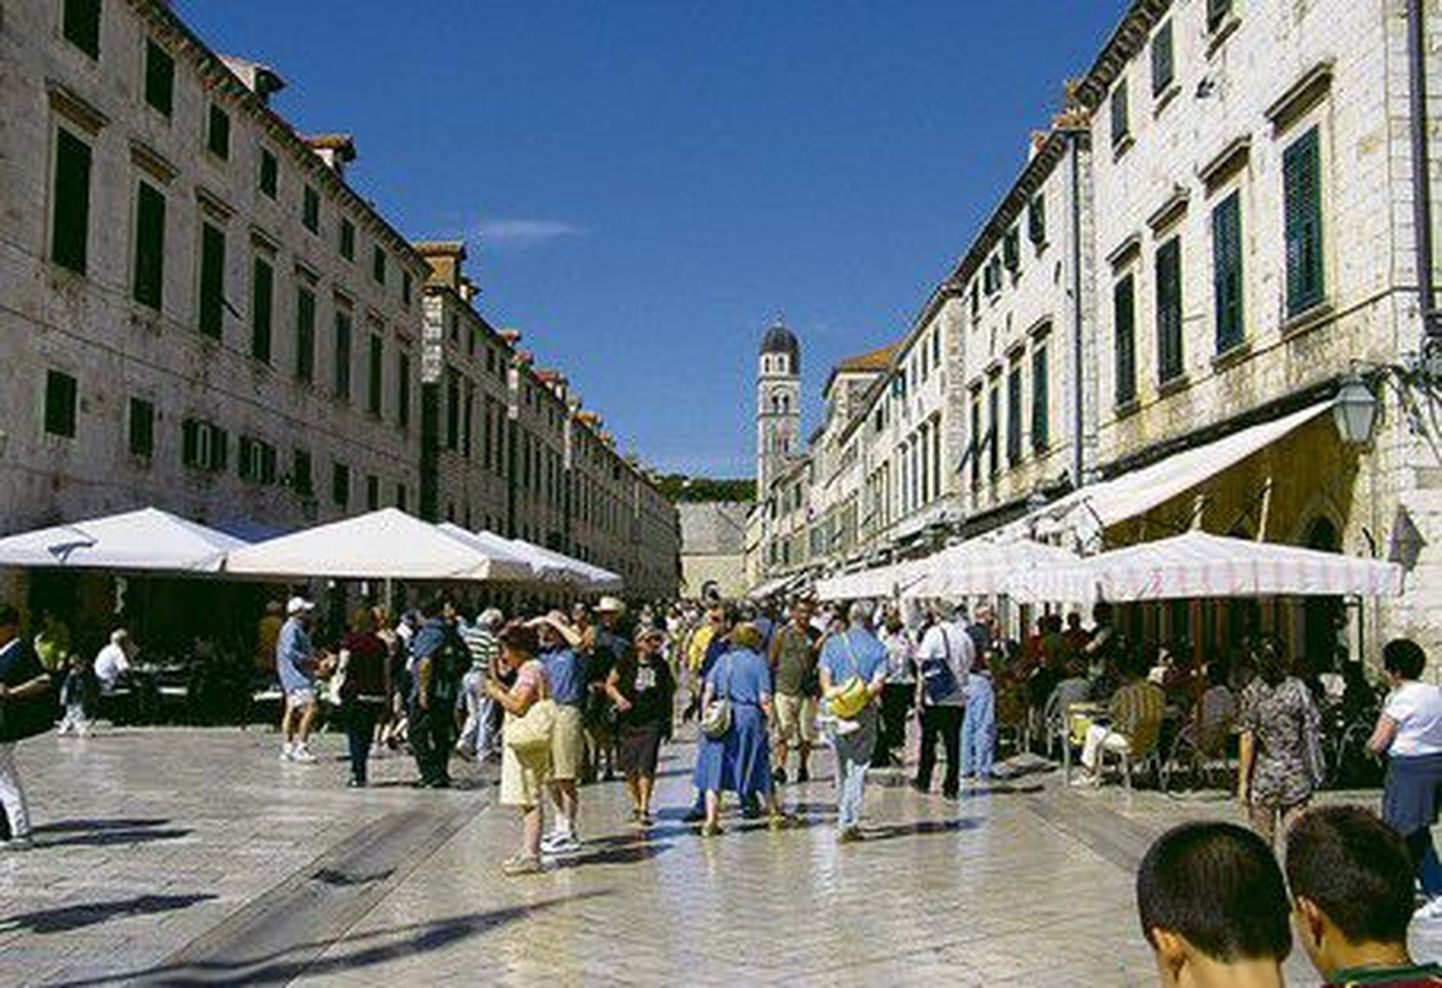 Aadria mere ääres asuv Horvaatia kuurortlinn Dubrovnik on tõeline turistide meka vapustava vanalinna ja kaljude keskel asuvate plaažidega.